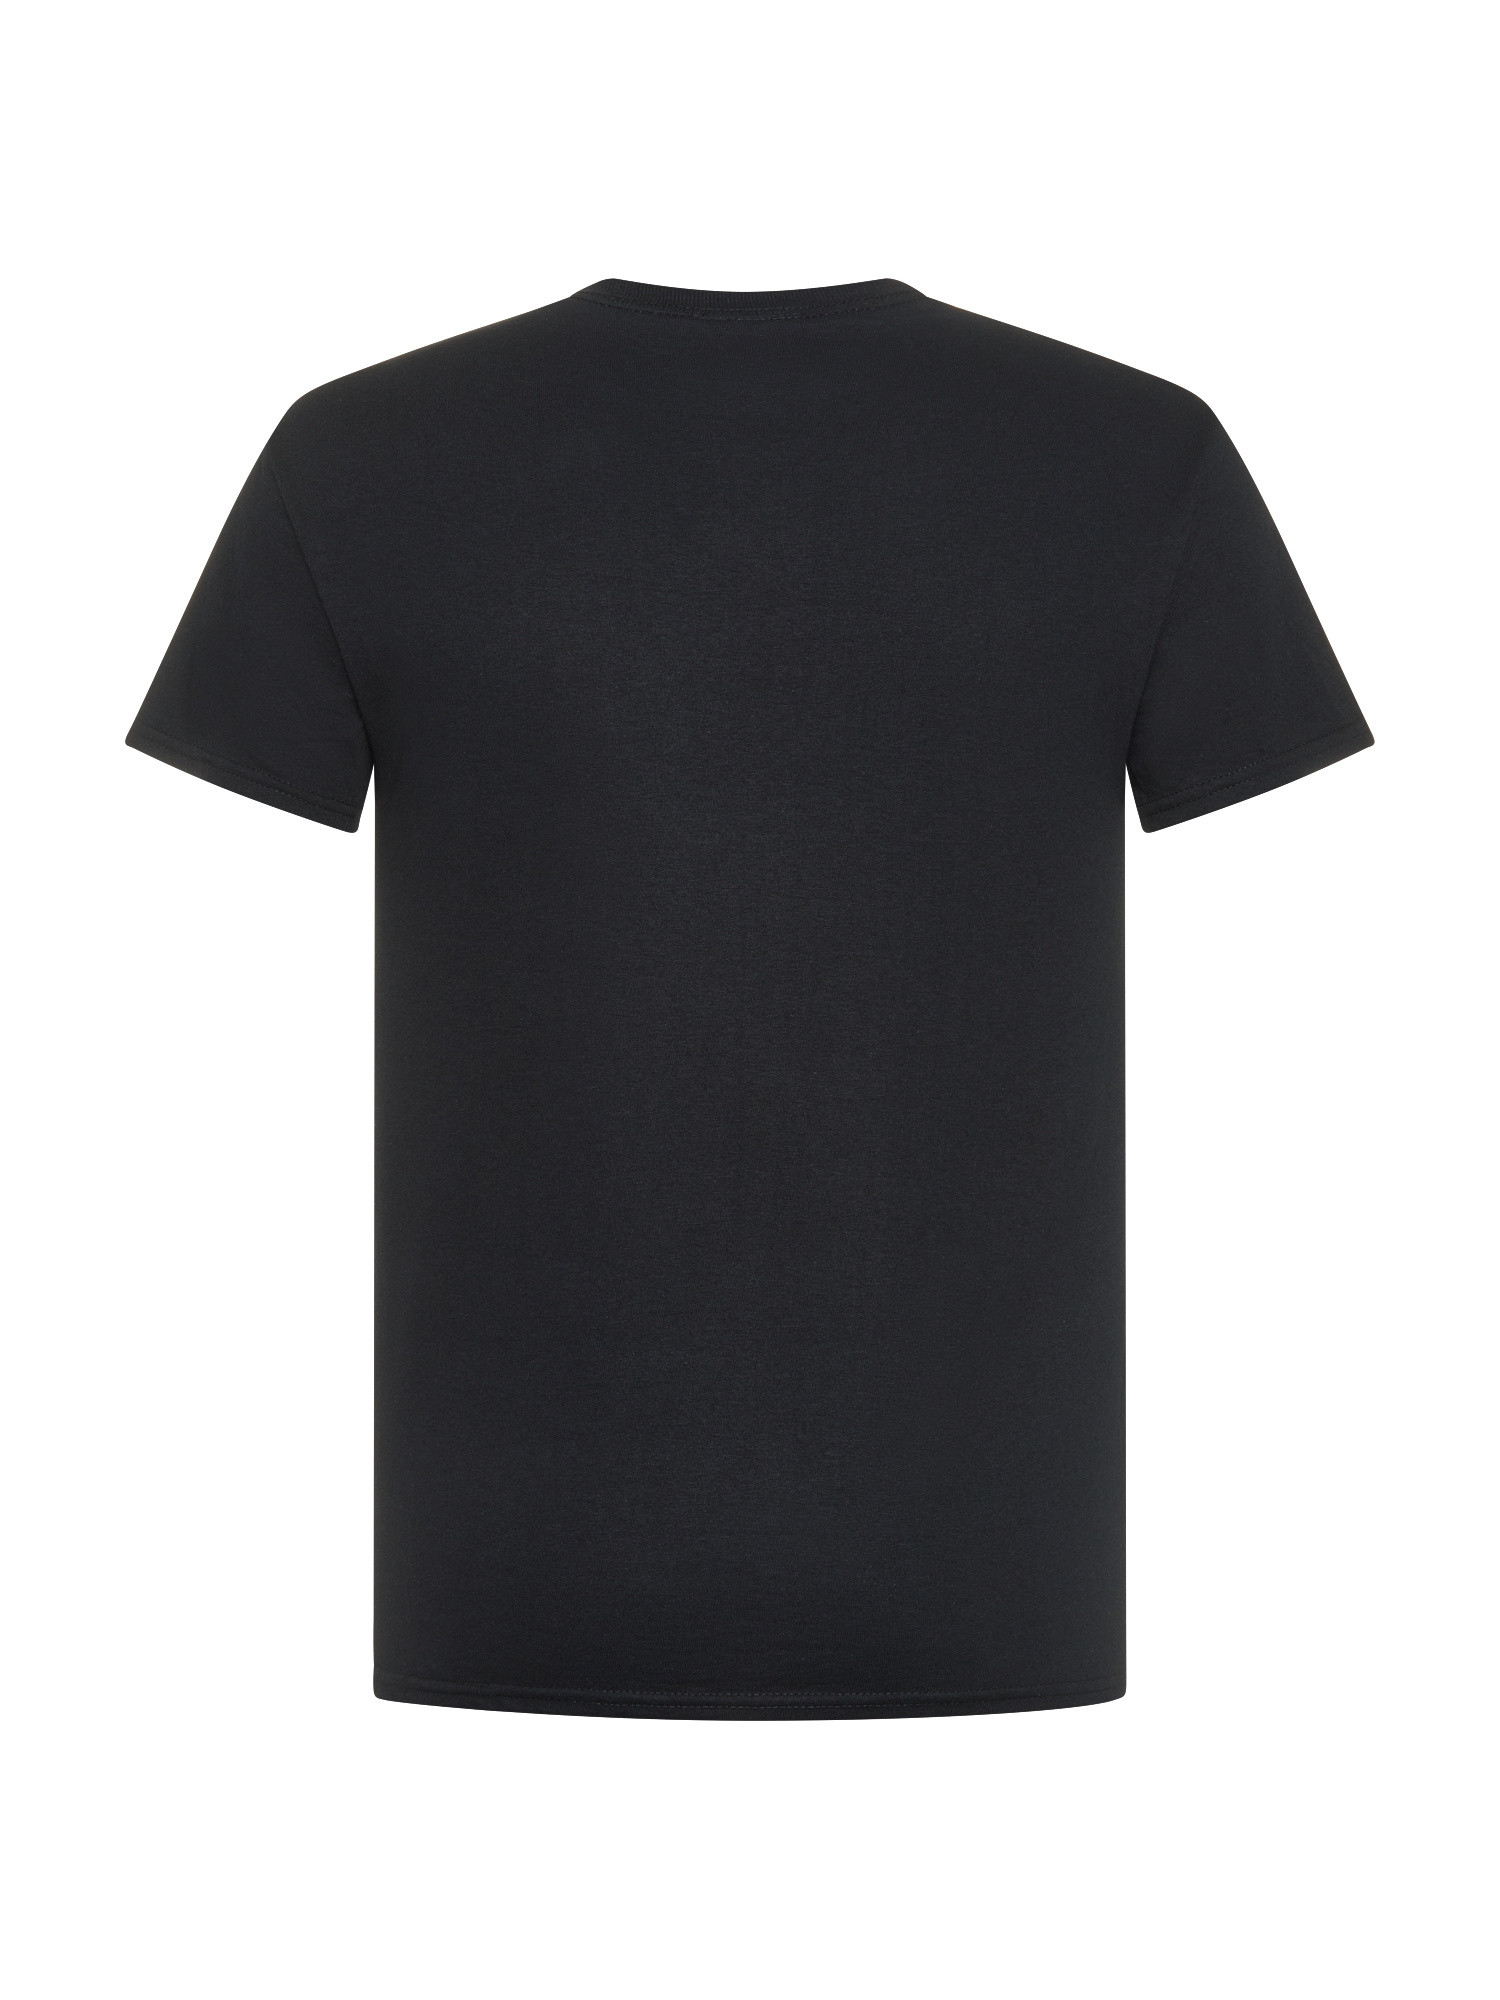 Thrasher - Flames logo T-Shirt, Black, large image number 1